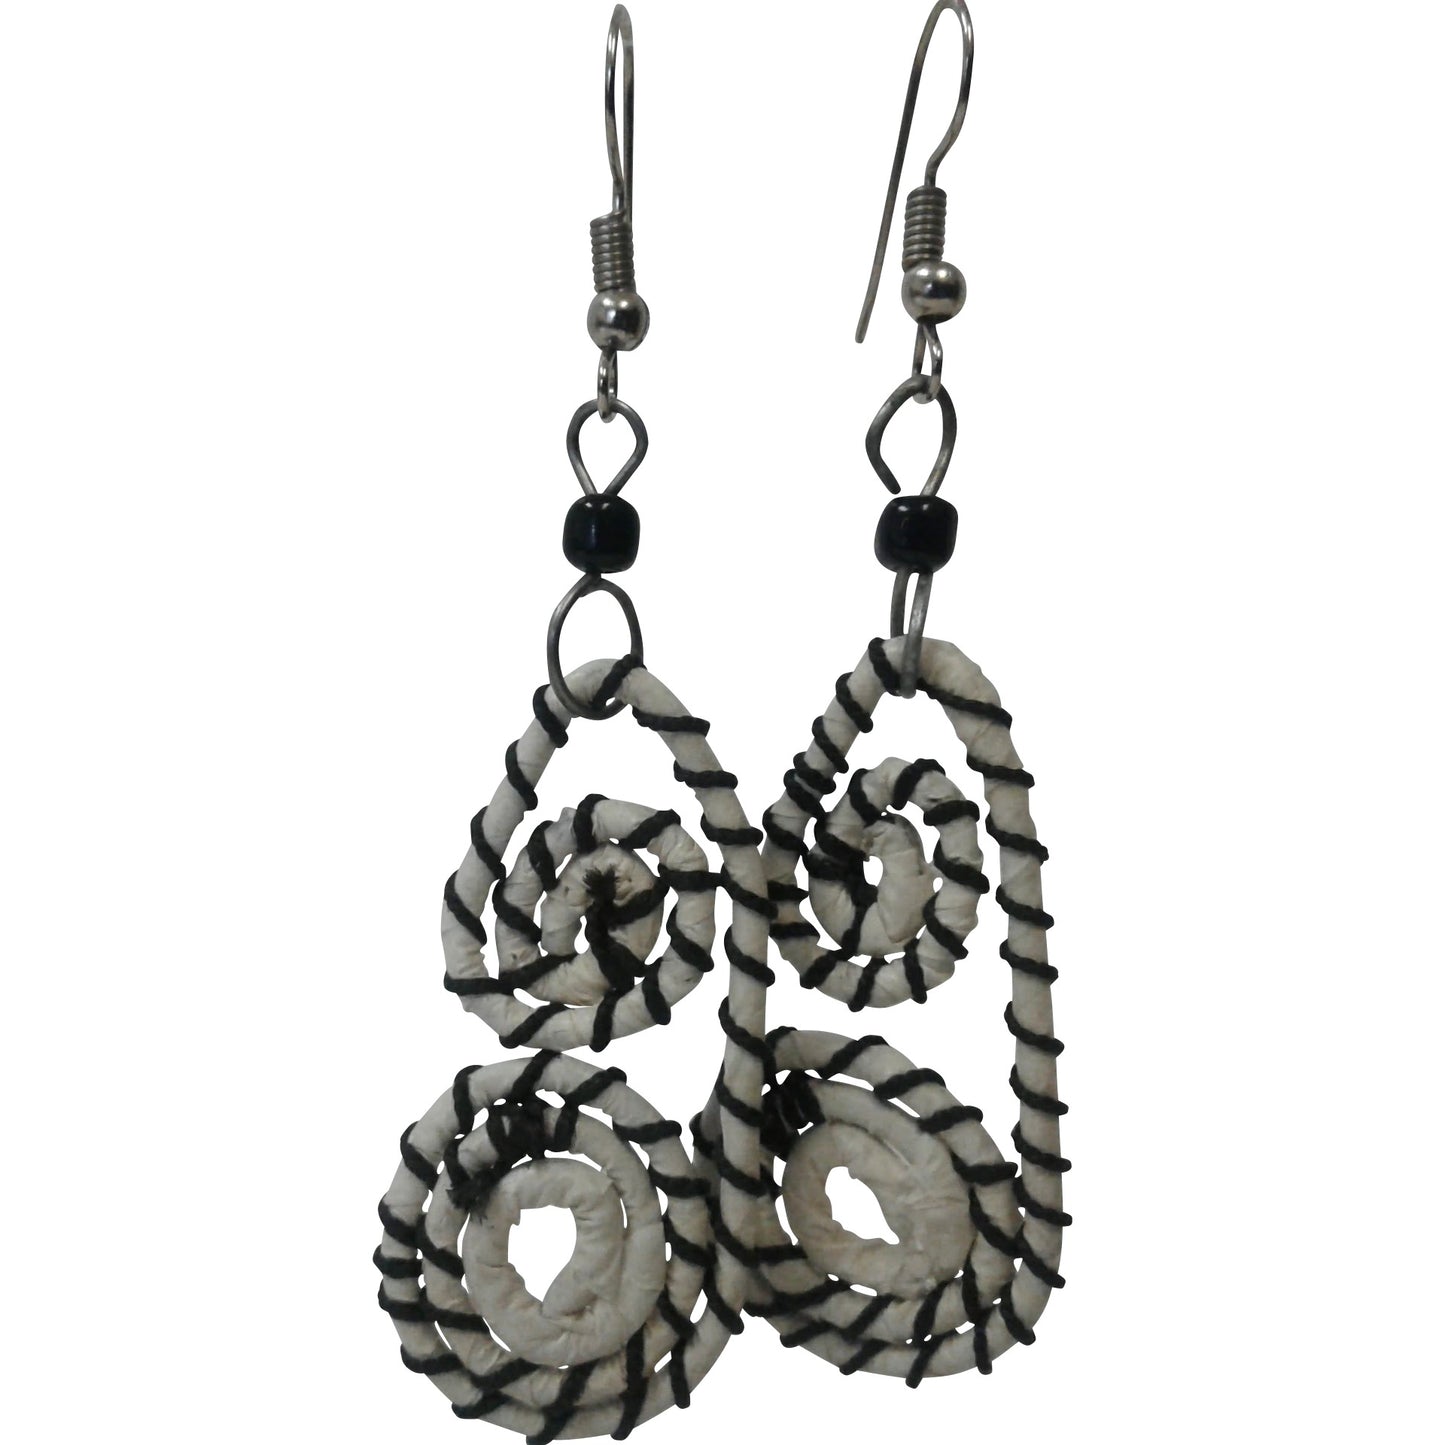 Double spiral dangling earrings